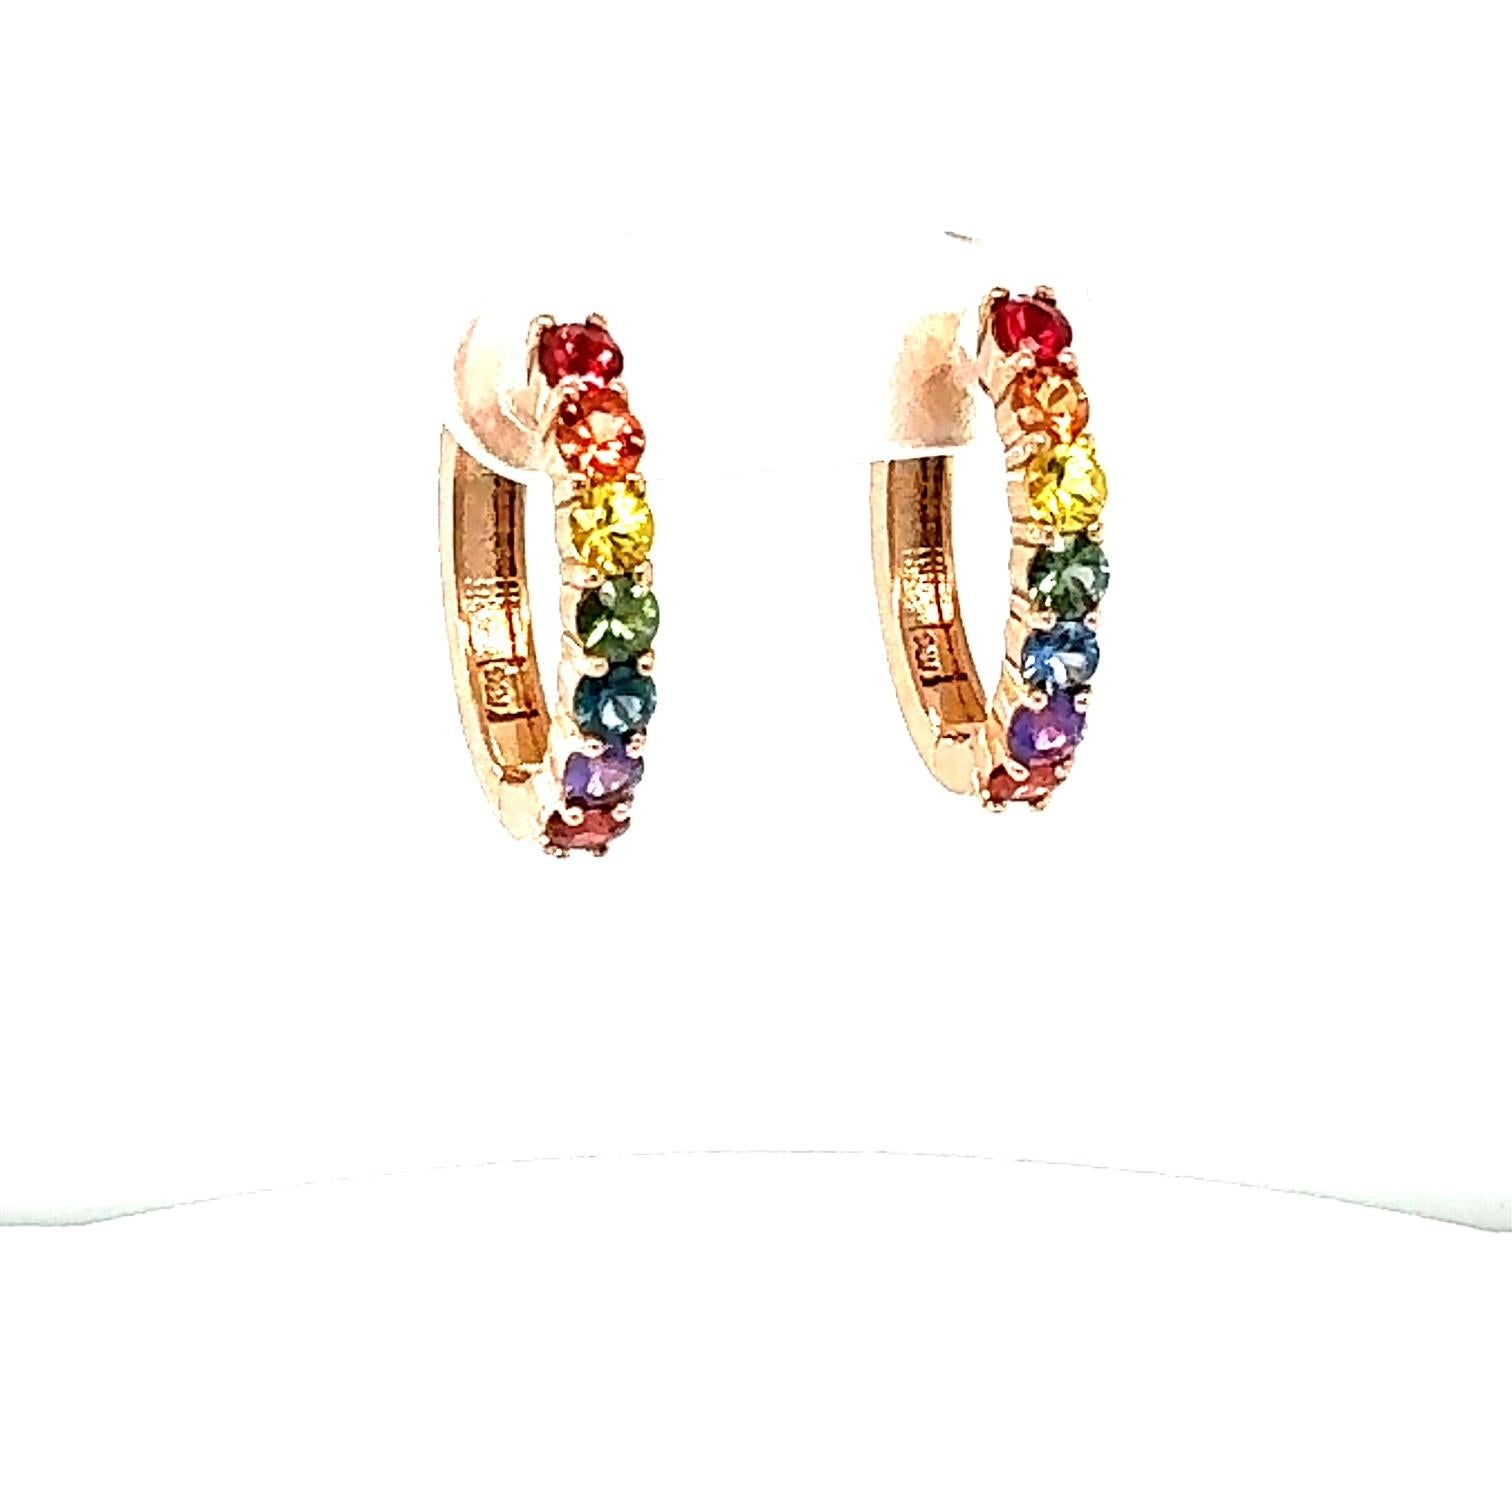 1.99 Carat Rainbow Sapphire Rose Gold Hoop Ears
Magnifiques boucles d'oreilles serrées de tous les jours 

Spécifications de l'article :

14 saphirs naturels multicolores de taille ronde pesant 1,99 carats
Le poids total en carats est de 1,99